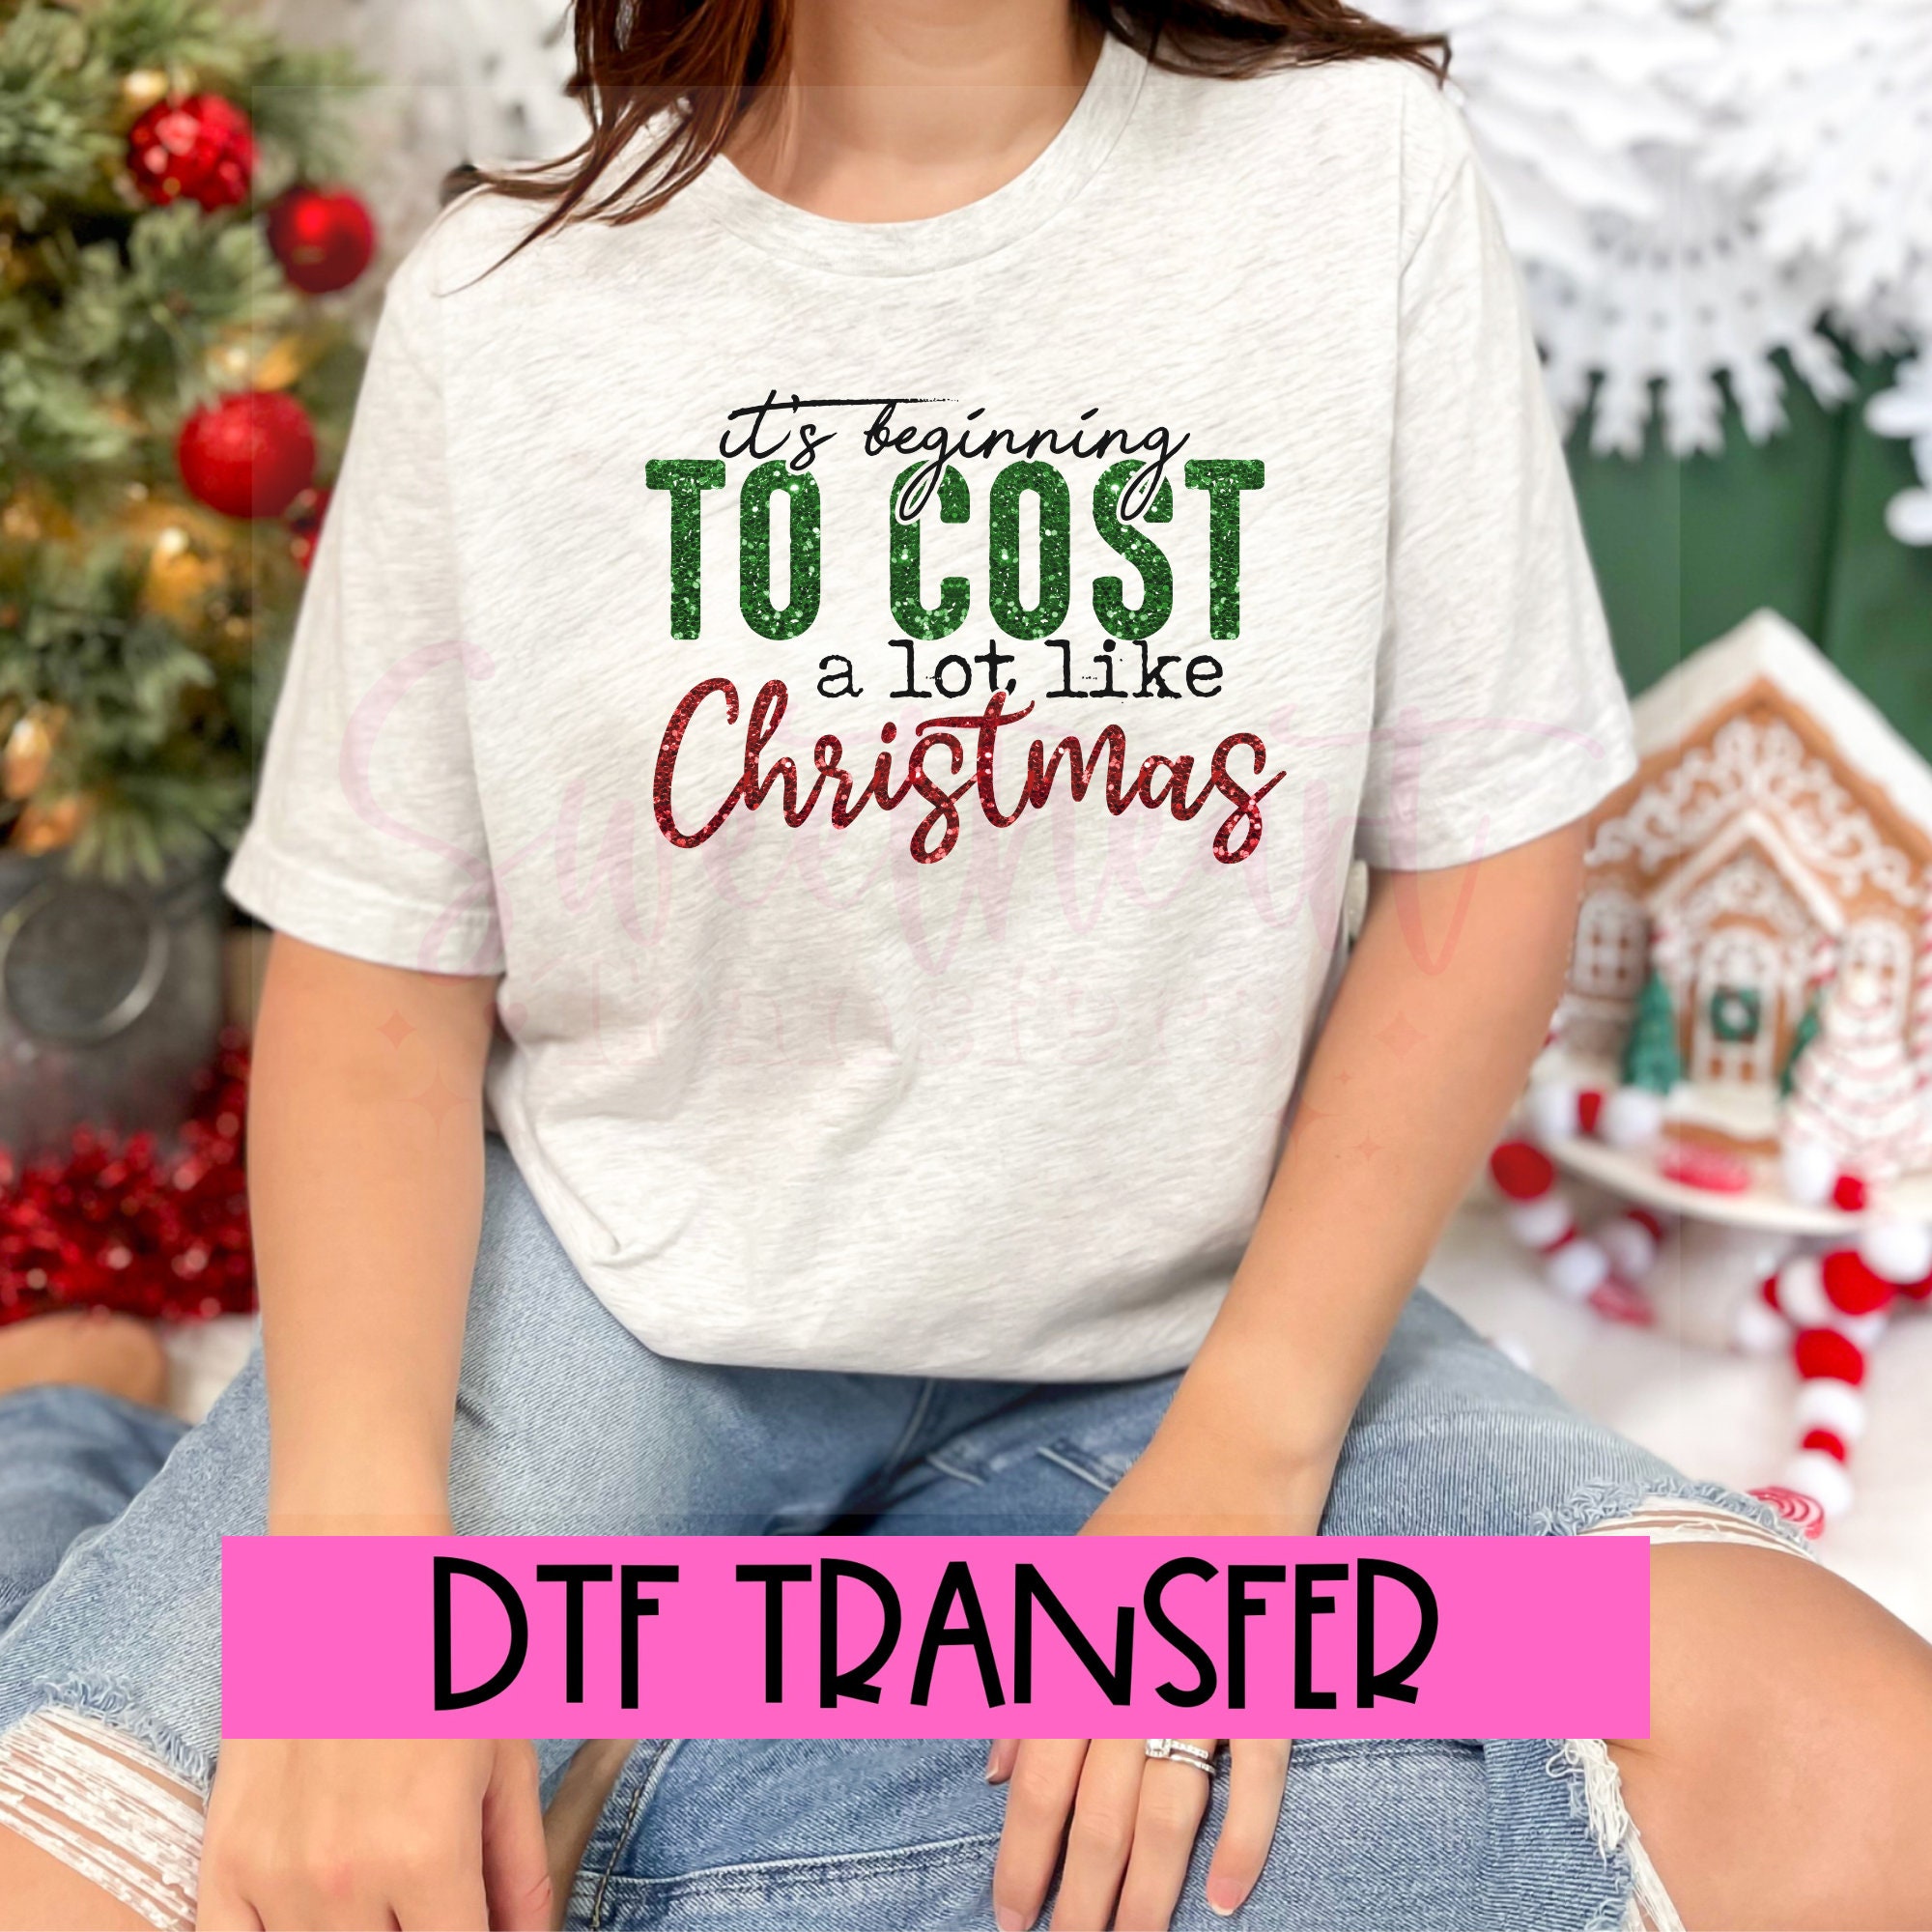 DTF Transfer Kit